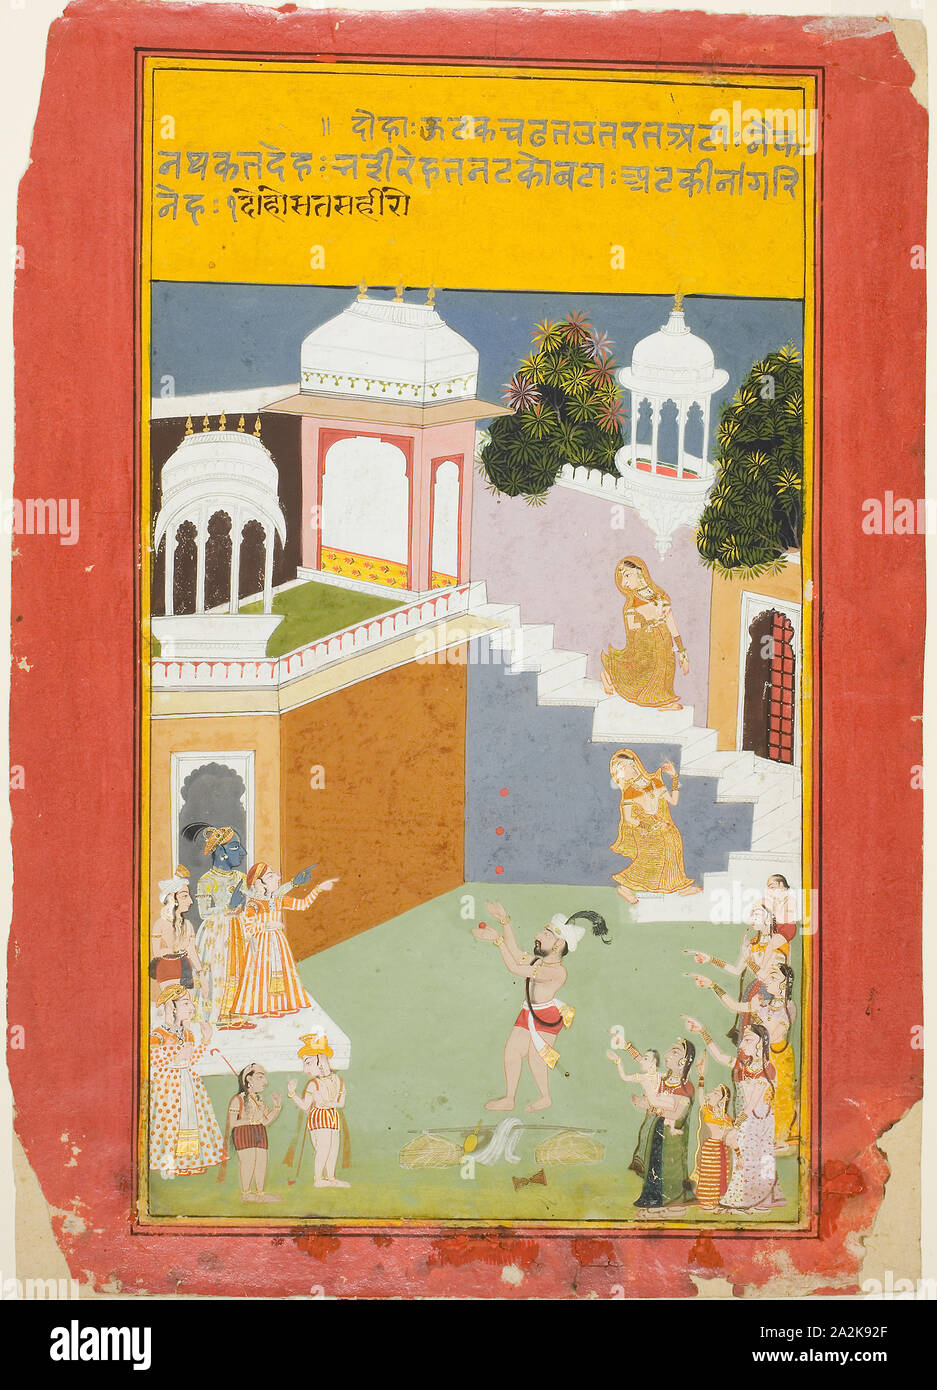 Montres Krishna un jongleur, à partir d'une copie de Bihari est assis Sai, c. 1750/90, l'Inde, Rajasthan, Inde, de Mewar, aquarelle opaque et or sur papier, de l'image : 31,2 x 17,8 cm (12 1/4 x 7 in Banque D'Images